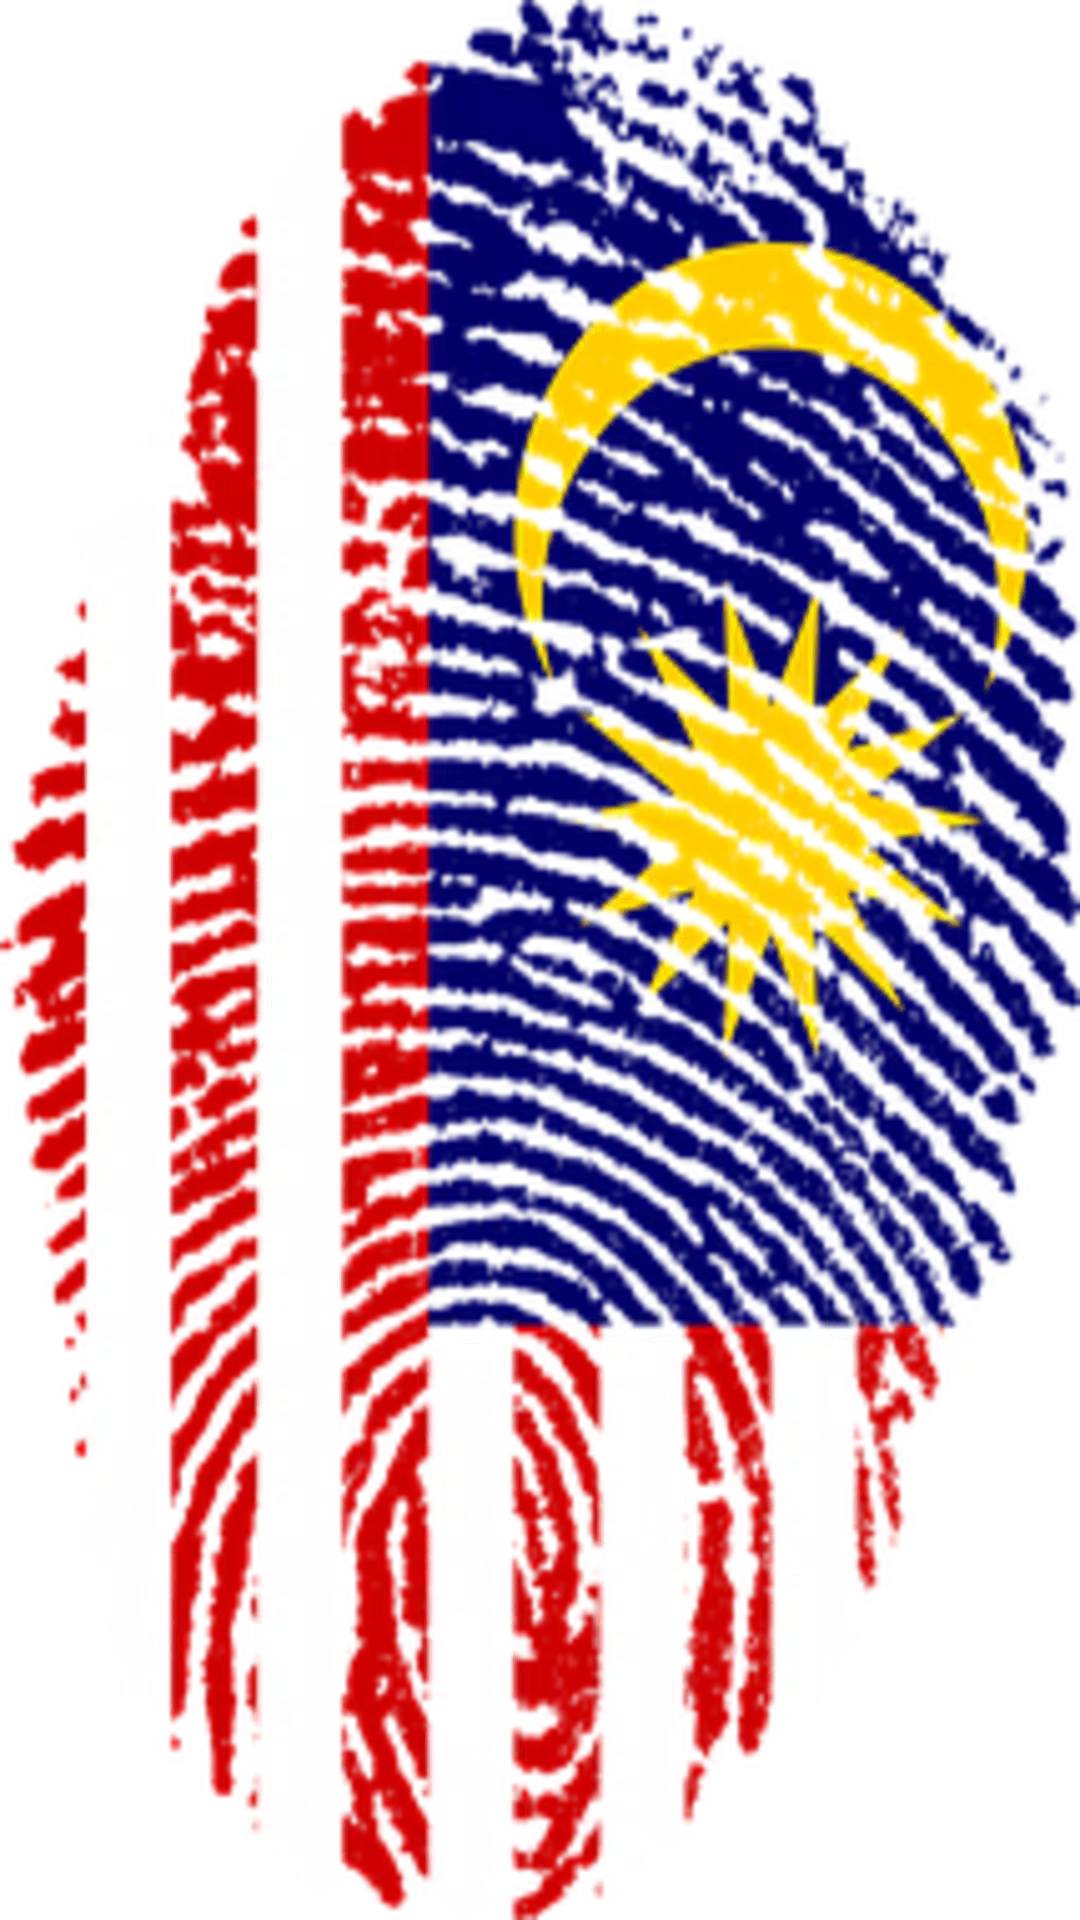 Malaysia National Anthem - Negaraku Lyrics APK for Android Download